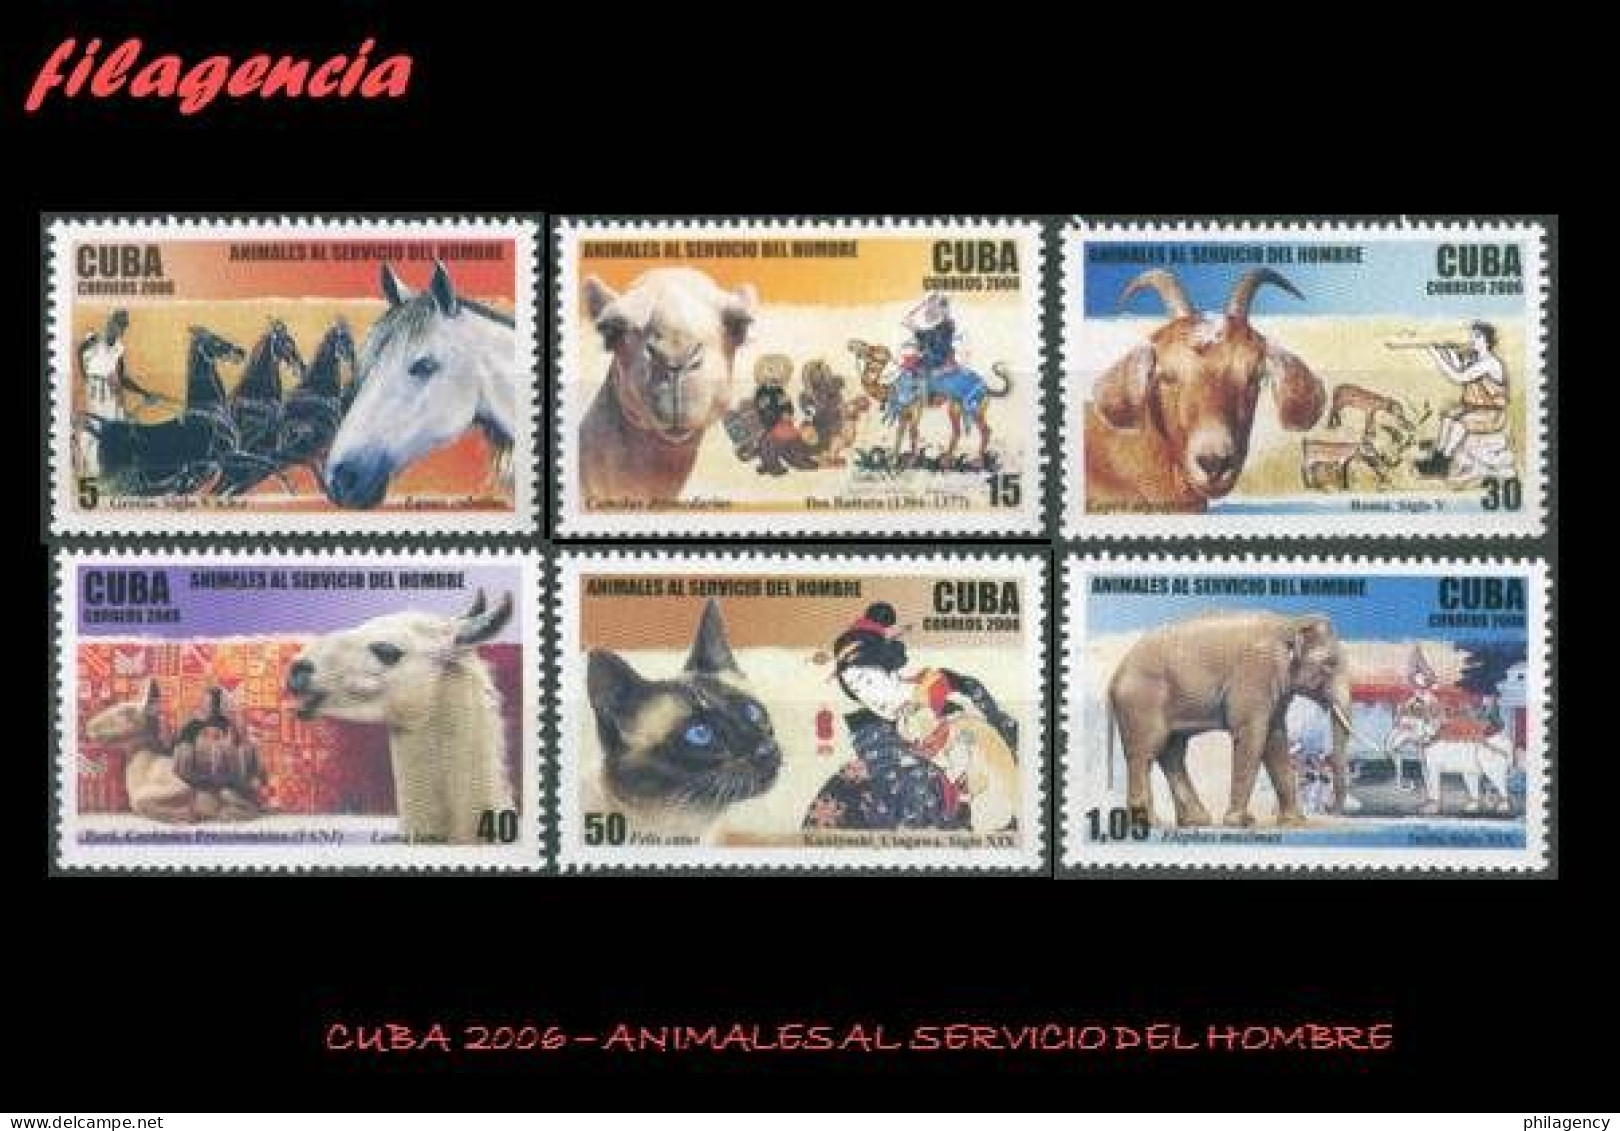 CUBA MINT. 2006-24 ANIMALES AL SERVICIO DEL HOMBRE - Nuevos